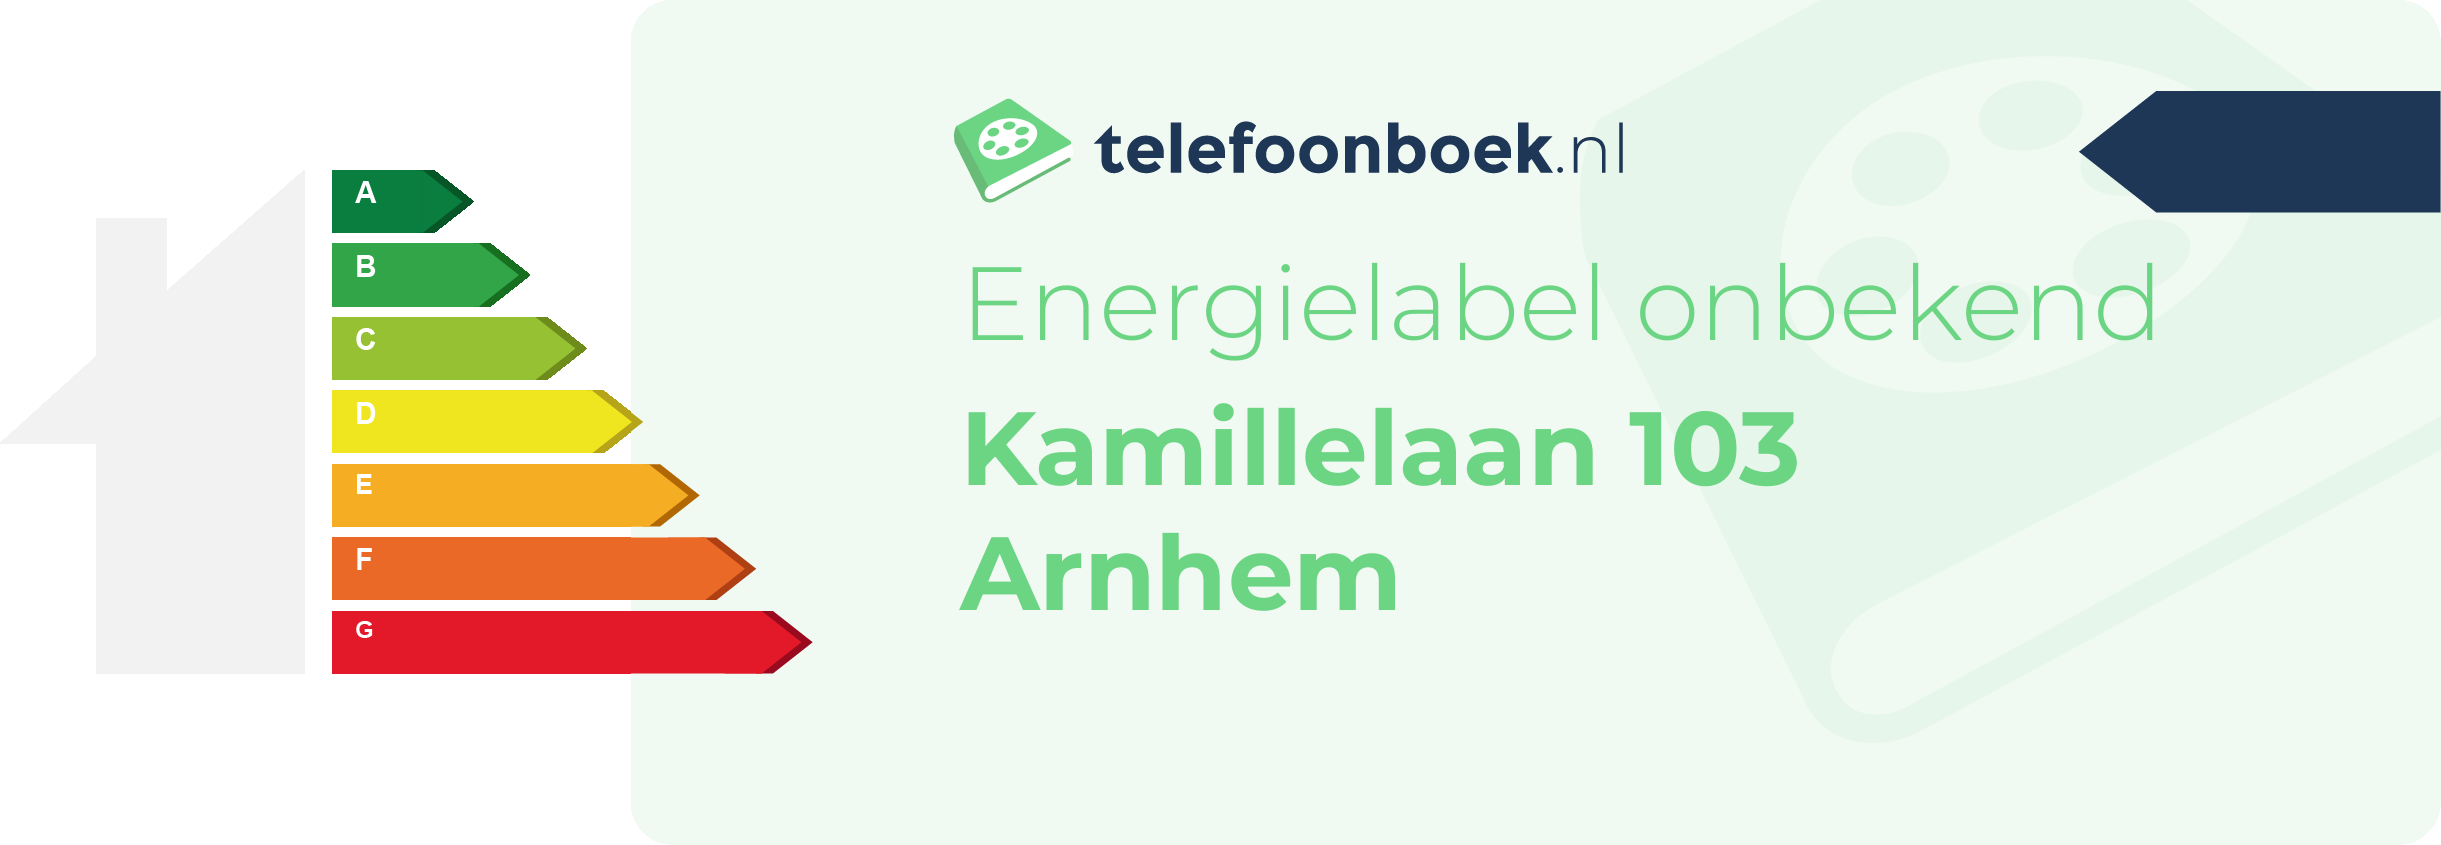 Energielabel Kamillelaan 103 Arnhem